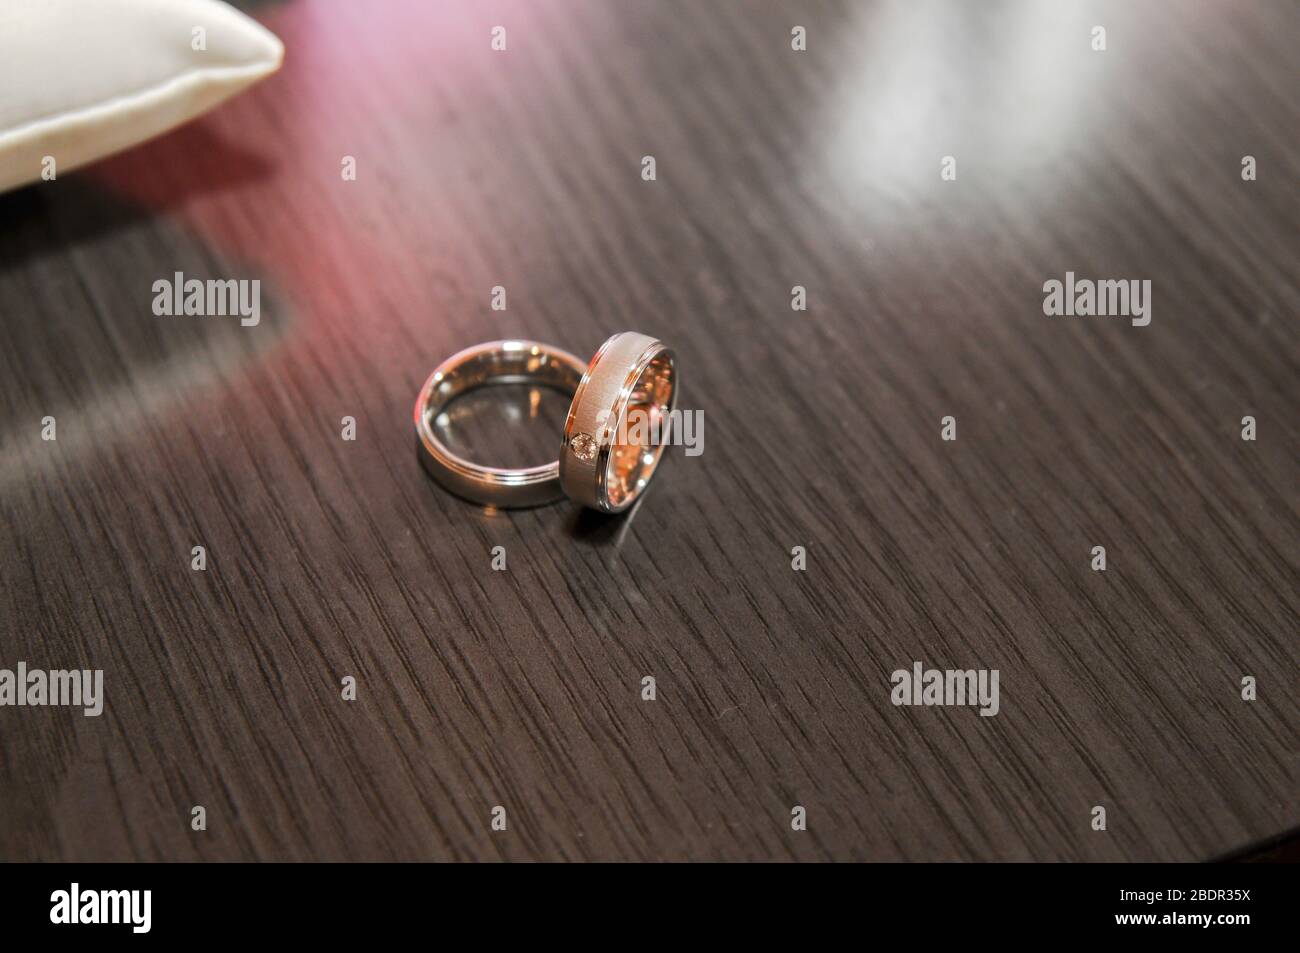 Schöner Ring mit Brillant neben einem anderen Ring auf einer Holzfläche Stockfoto